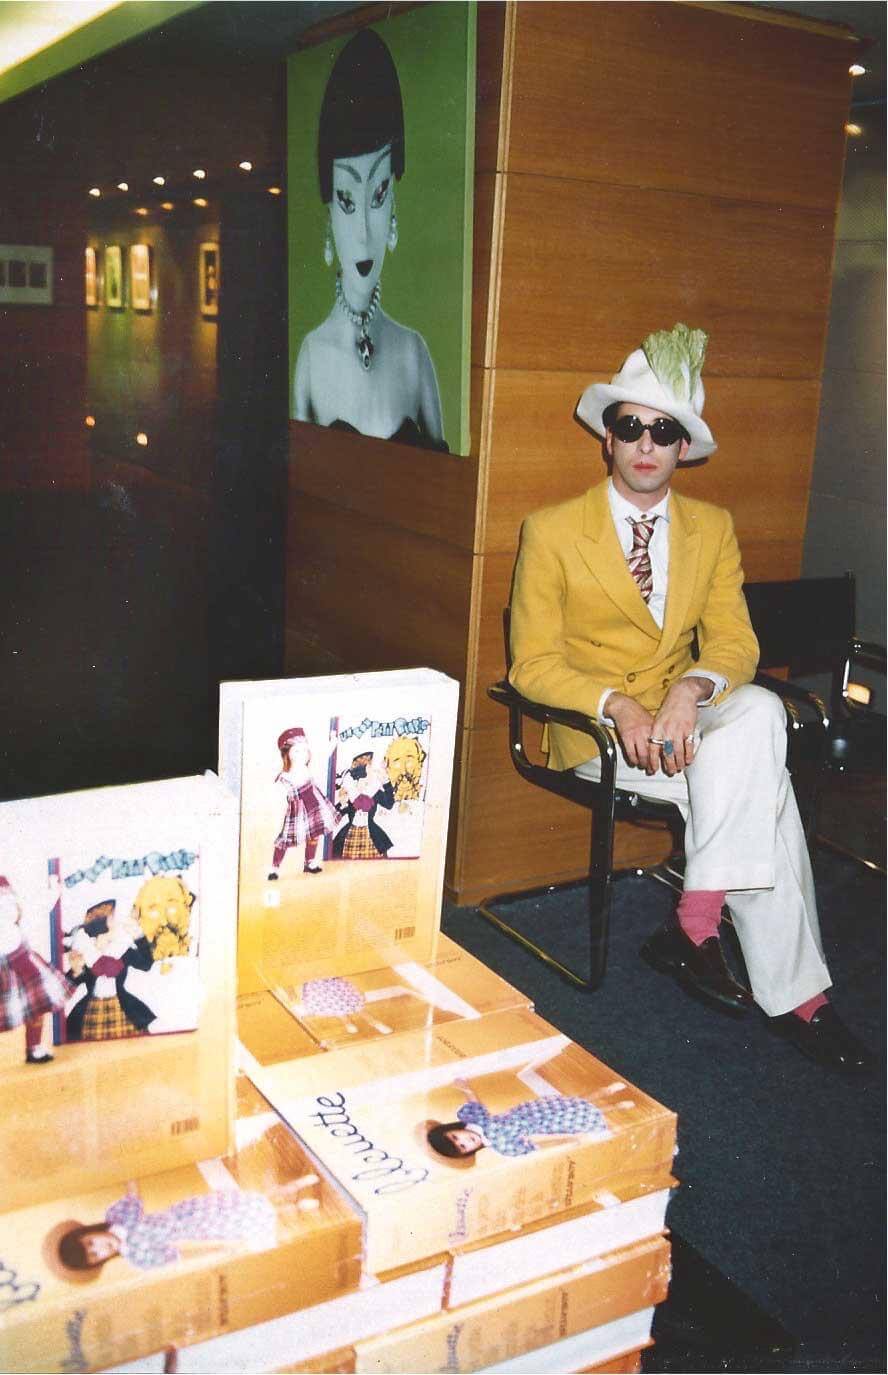 Intervista a BillyBoy*, musa e amante di Andy Warhol: "Amo i giovani di oggi, si interessano al metafisico" - IMG 4071 - Gay.it